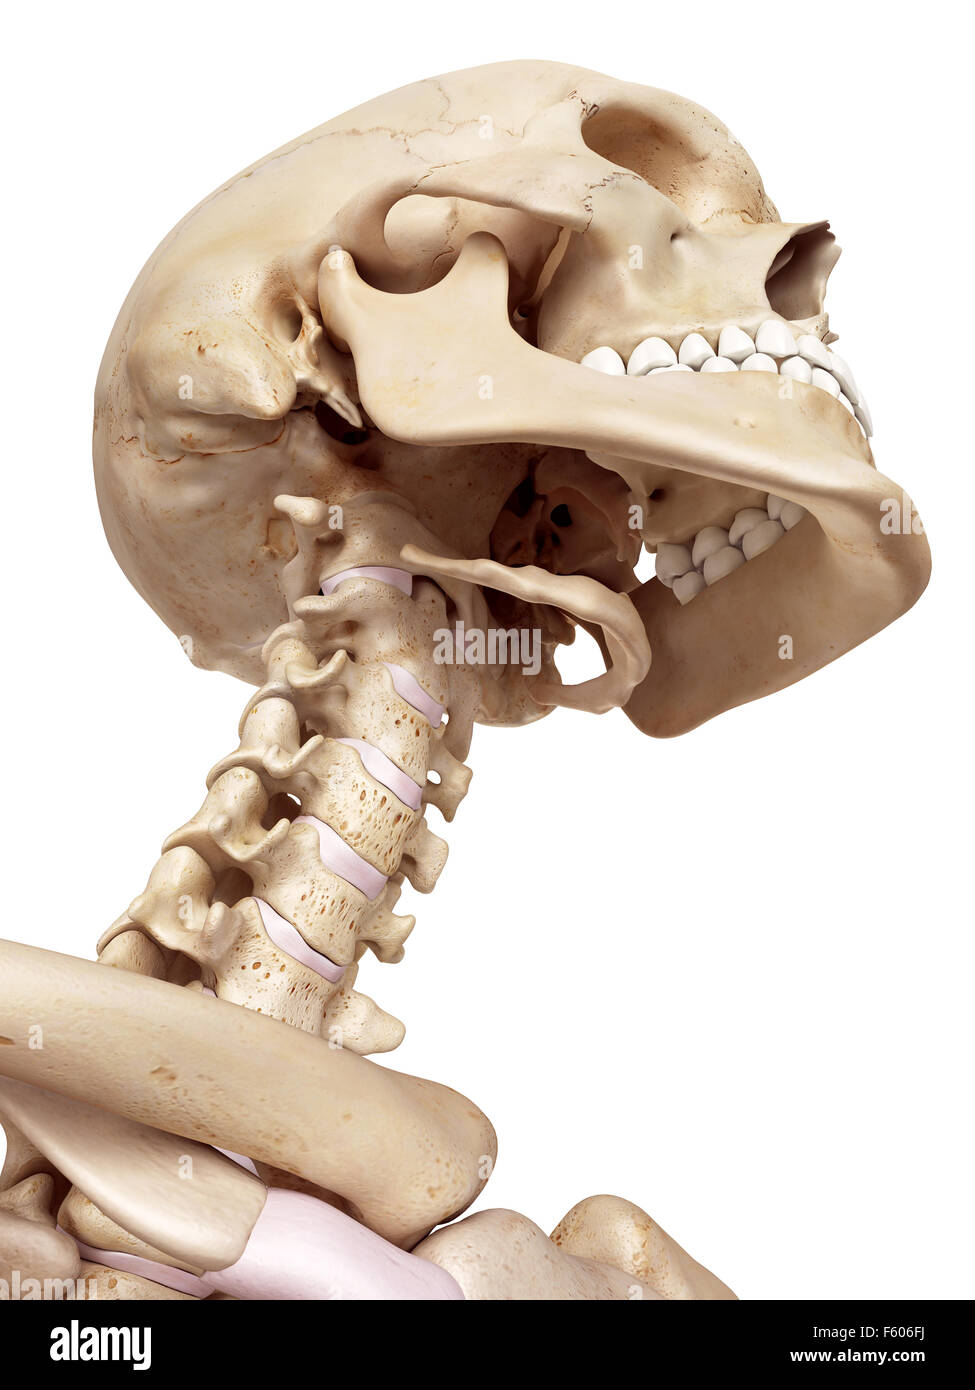 Между черепом и позвоночником. Череп с позвоночником. Скелет человека голова и шея. Строение черепа и позвоночника.